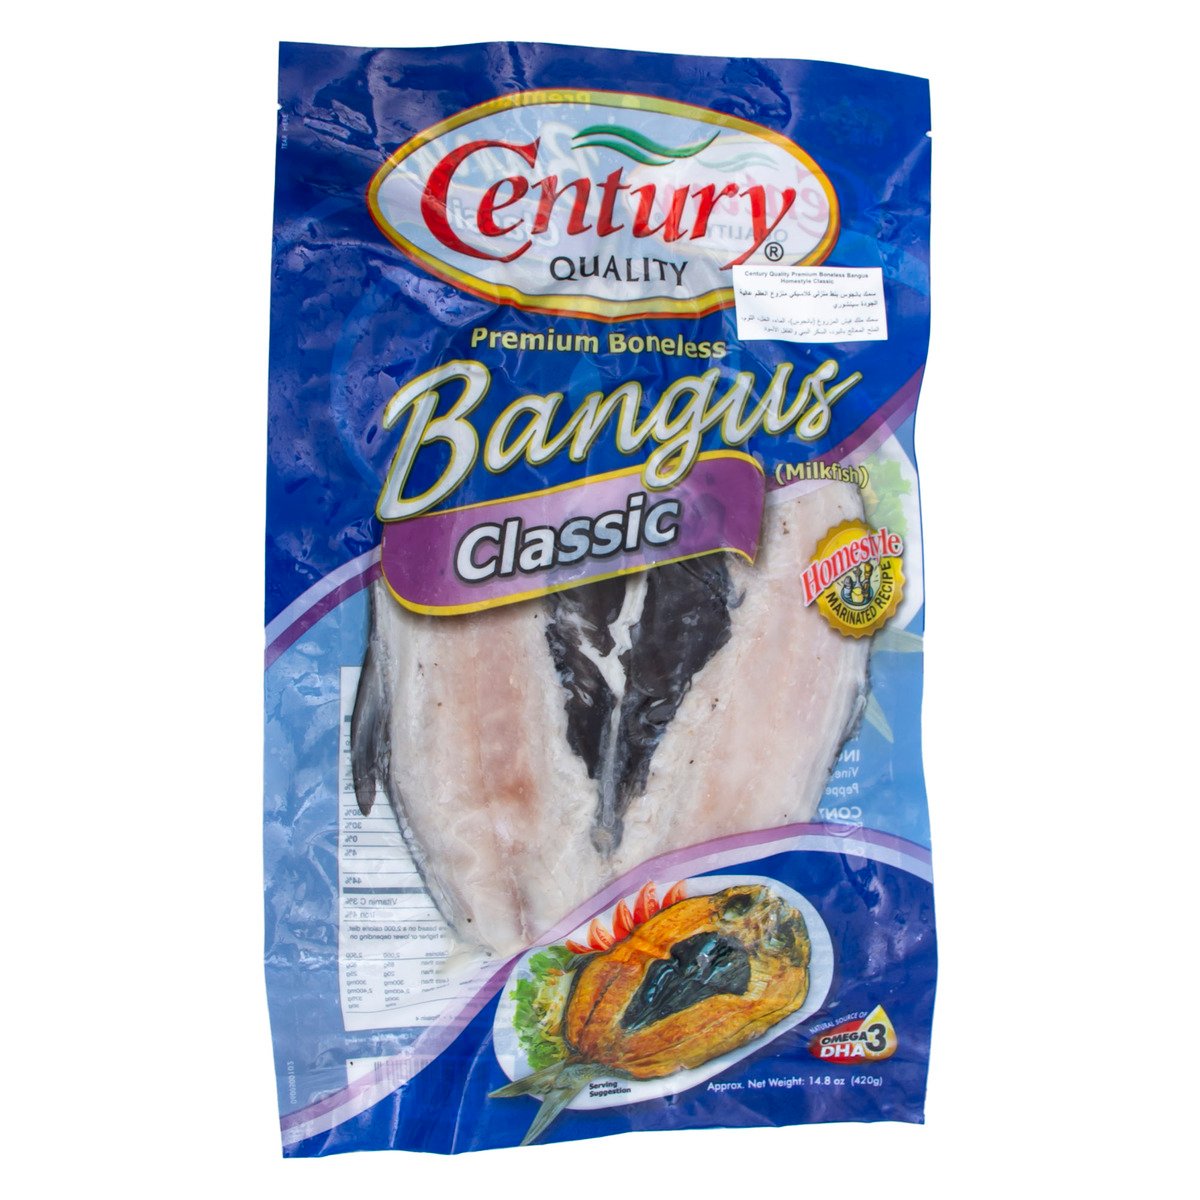 Century Premium Boneless Bangus Classic 420 g